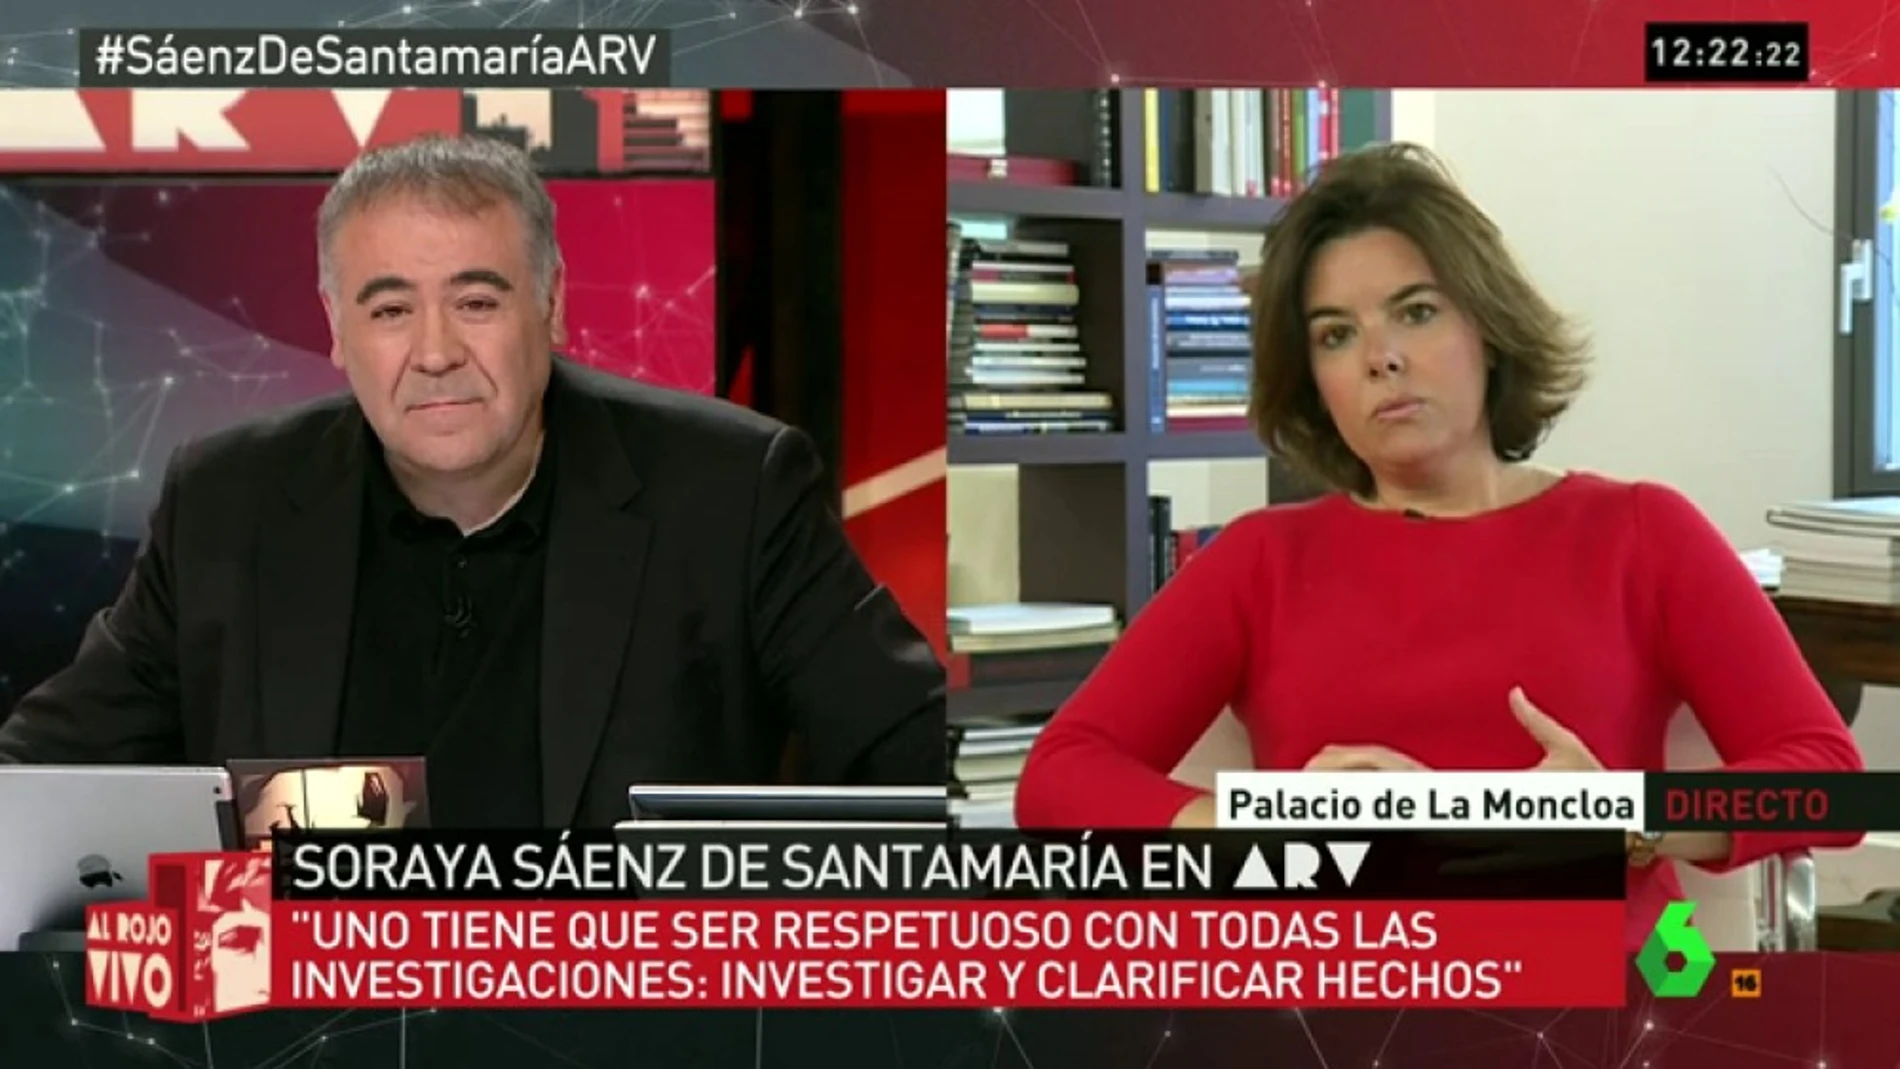 Soraya Sáenz de Santamaría en ARV